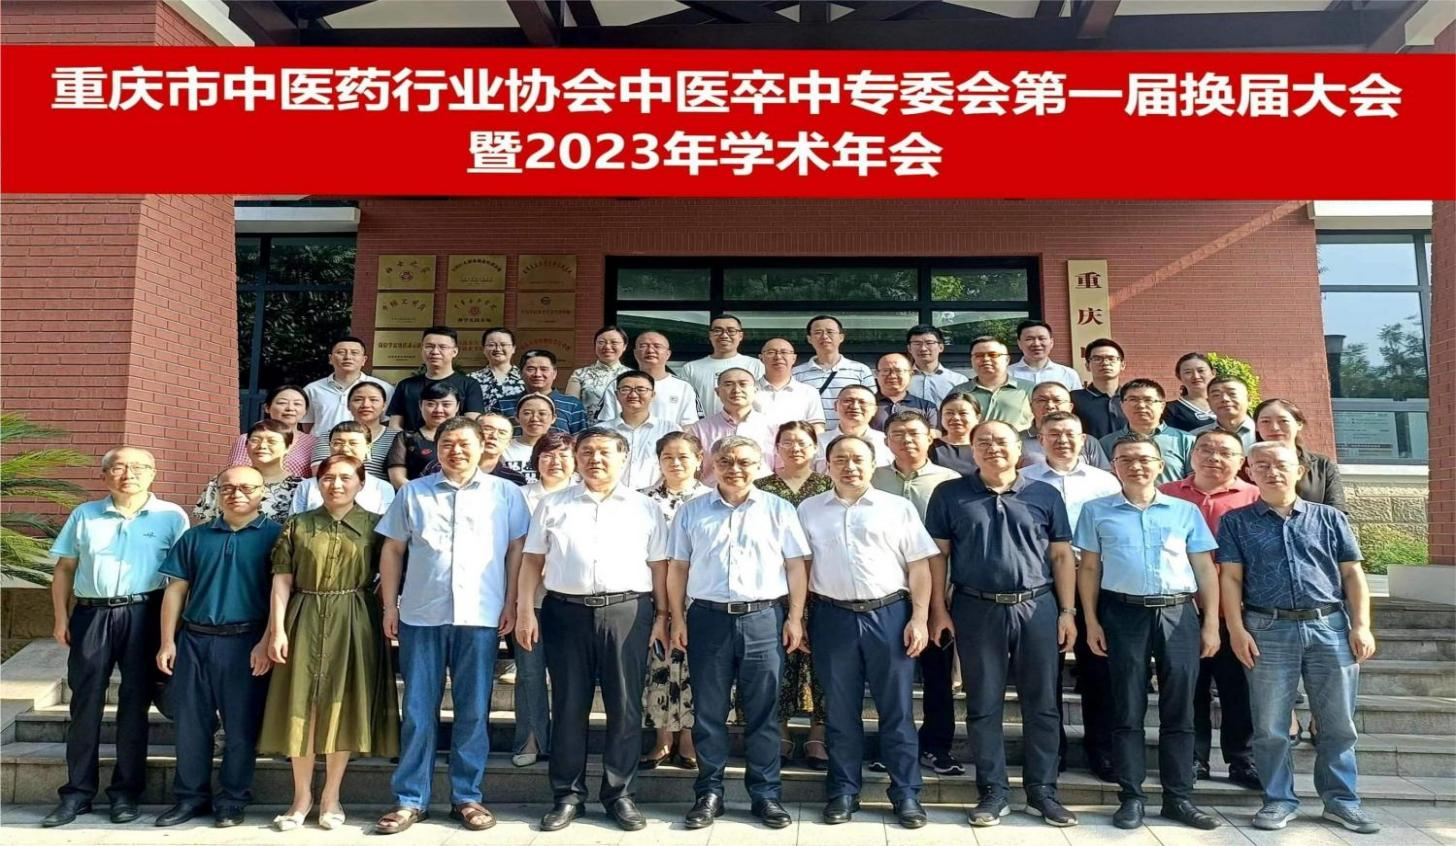 亚虎888电子游戏|（中国）有限公司中医卒中专业委员会 第一届换届大会暨2023年学术年会顺利召开